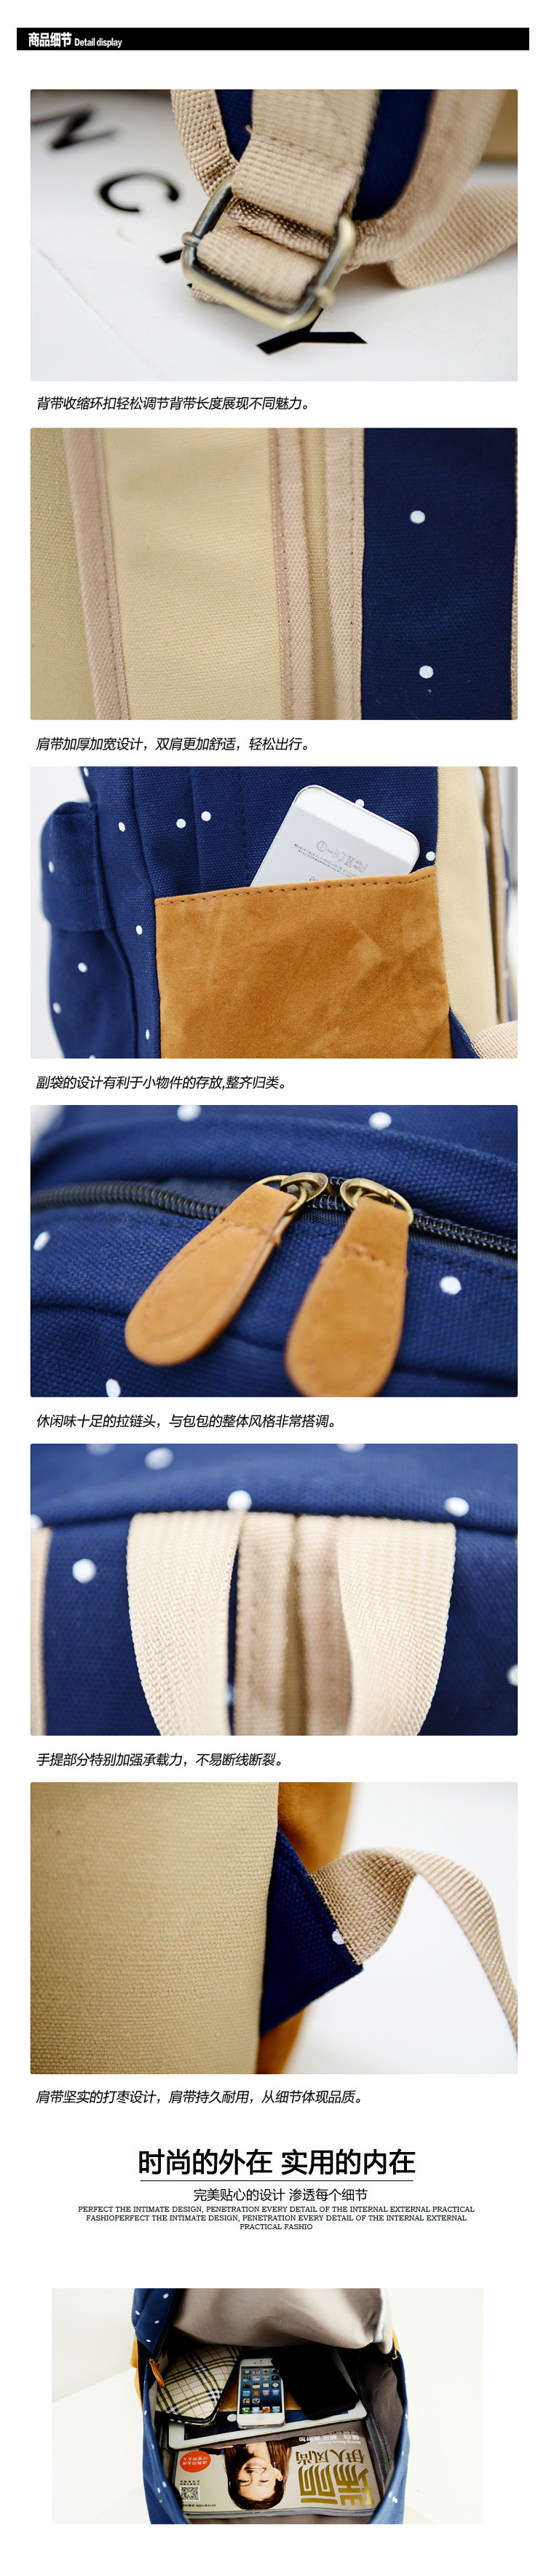 廠家批發新款韓版帆布書包印花波點雙肩包女包學生背包一件代發